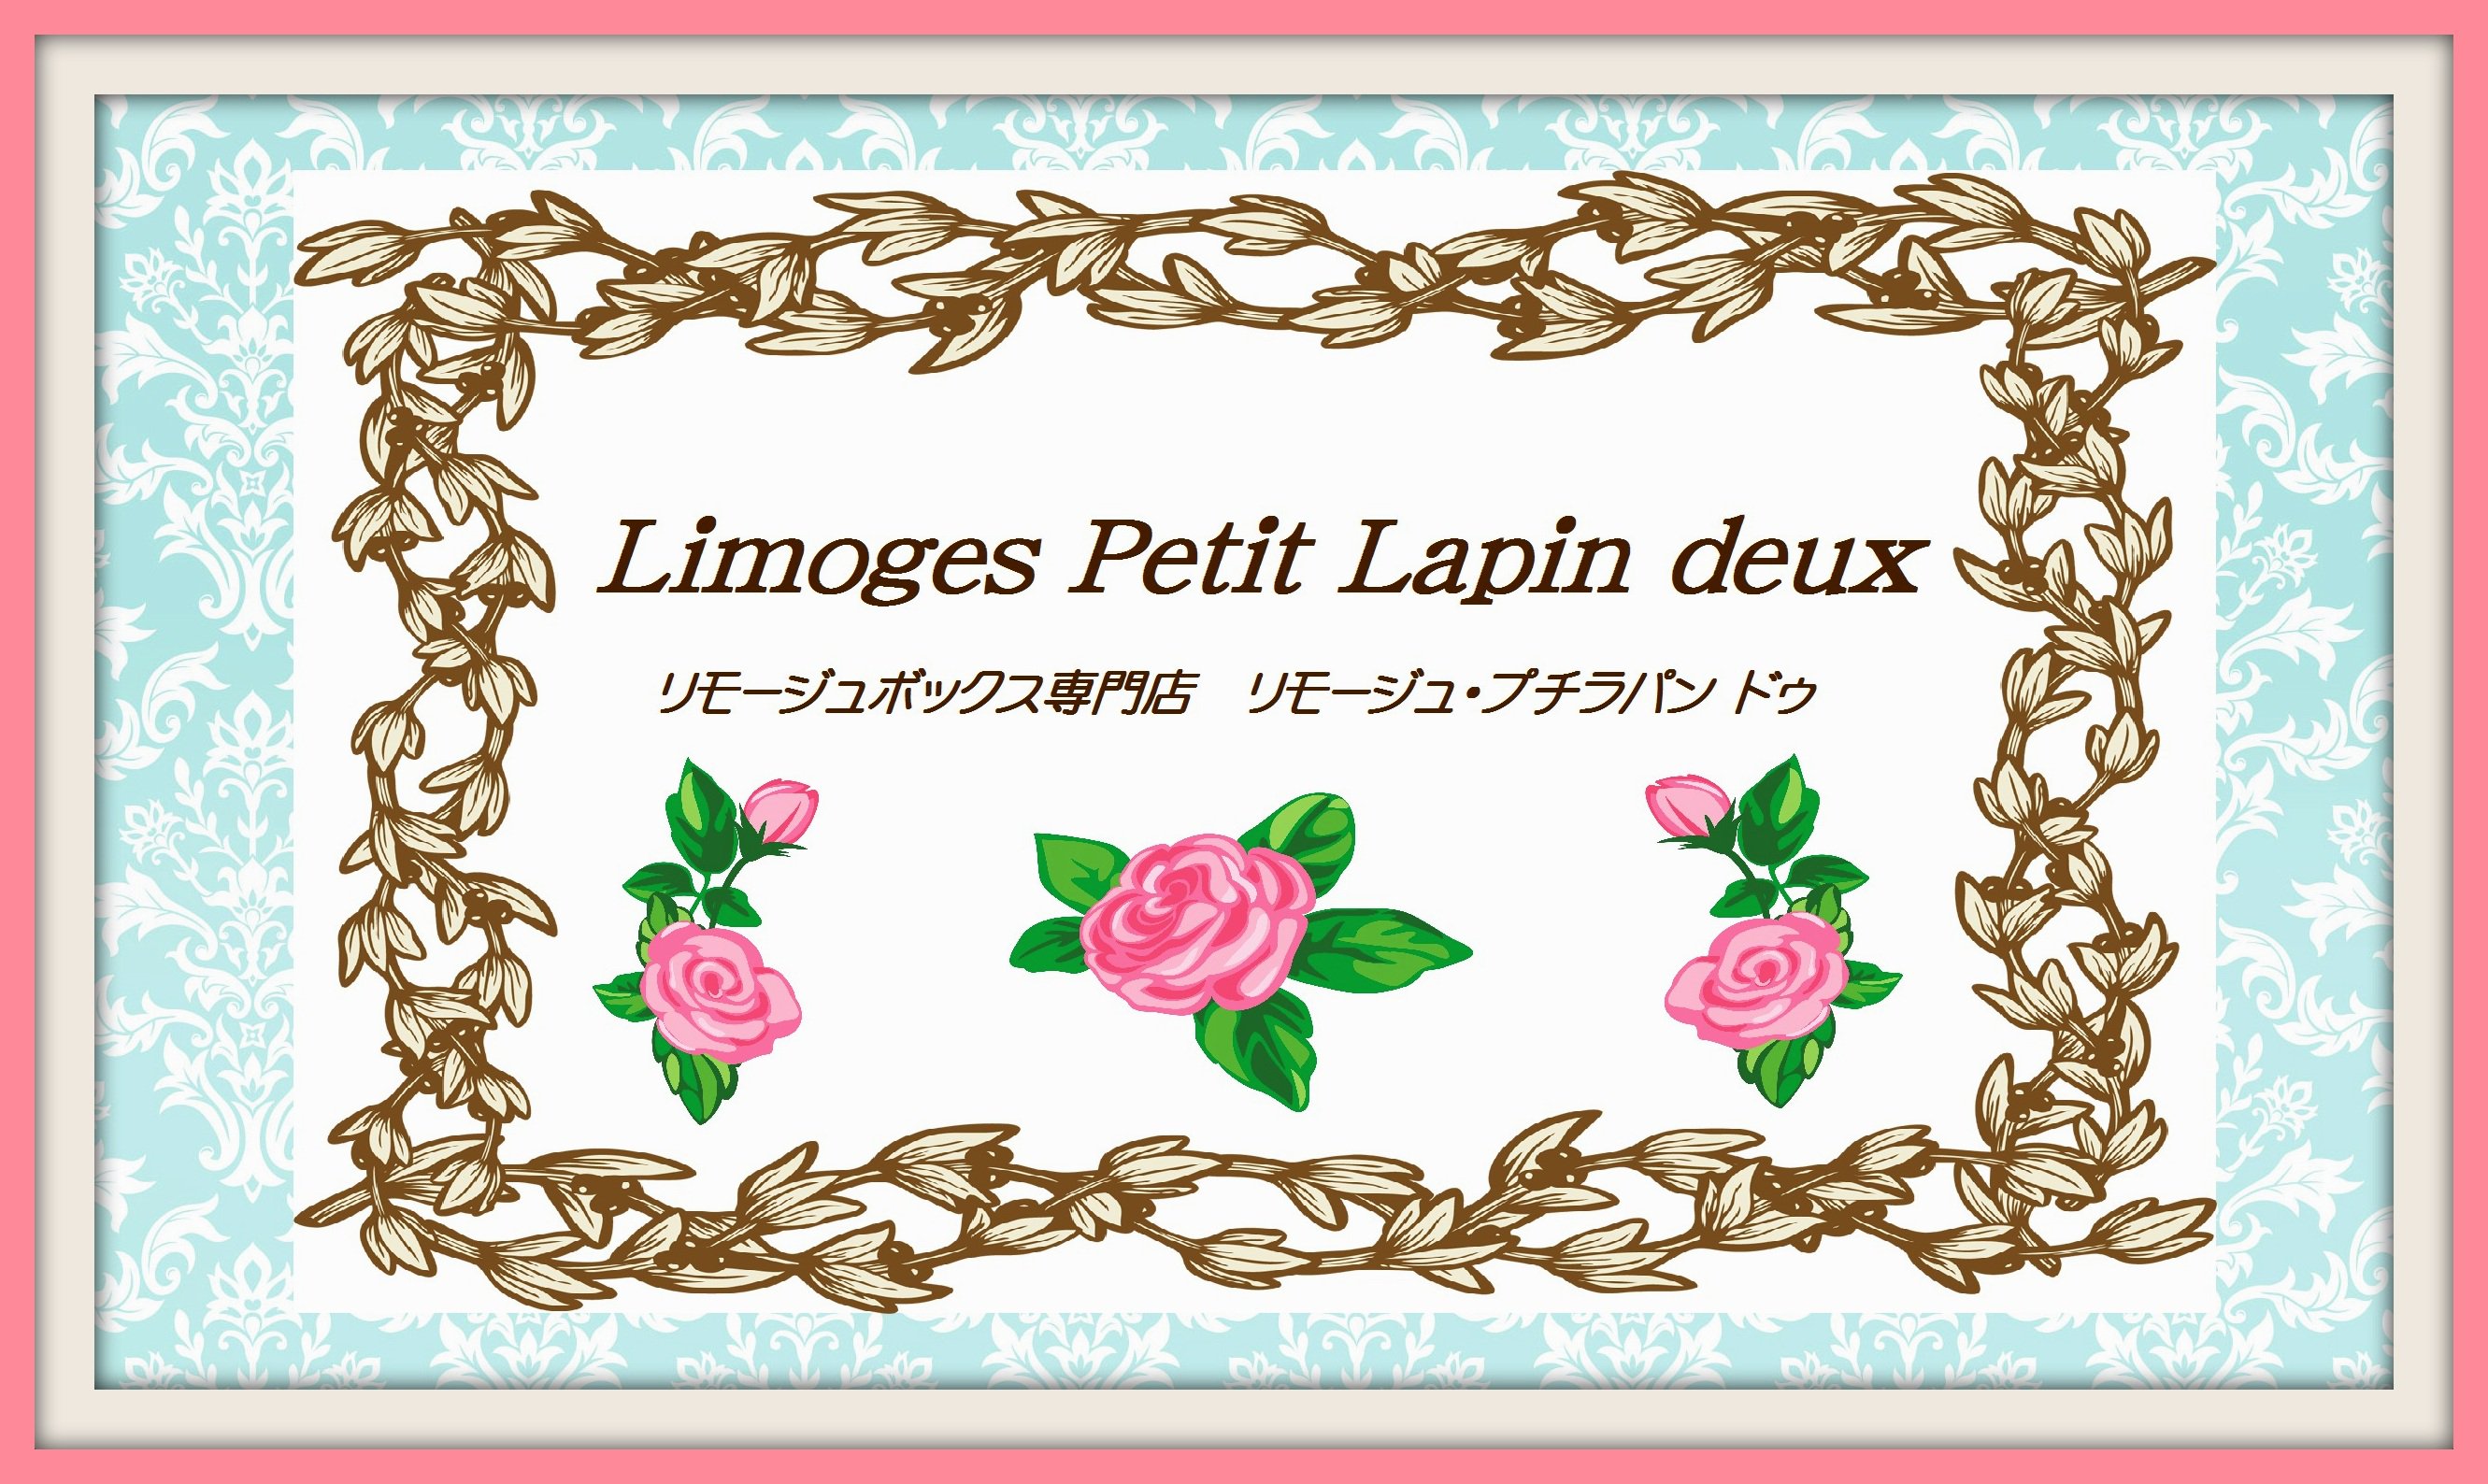 リモージュボックス専門店 Limoges Petit Lapin deux 